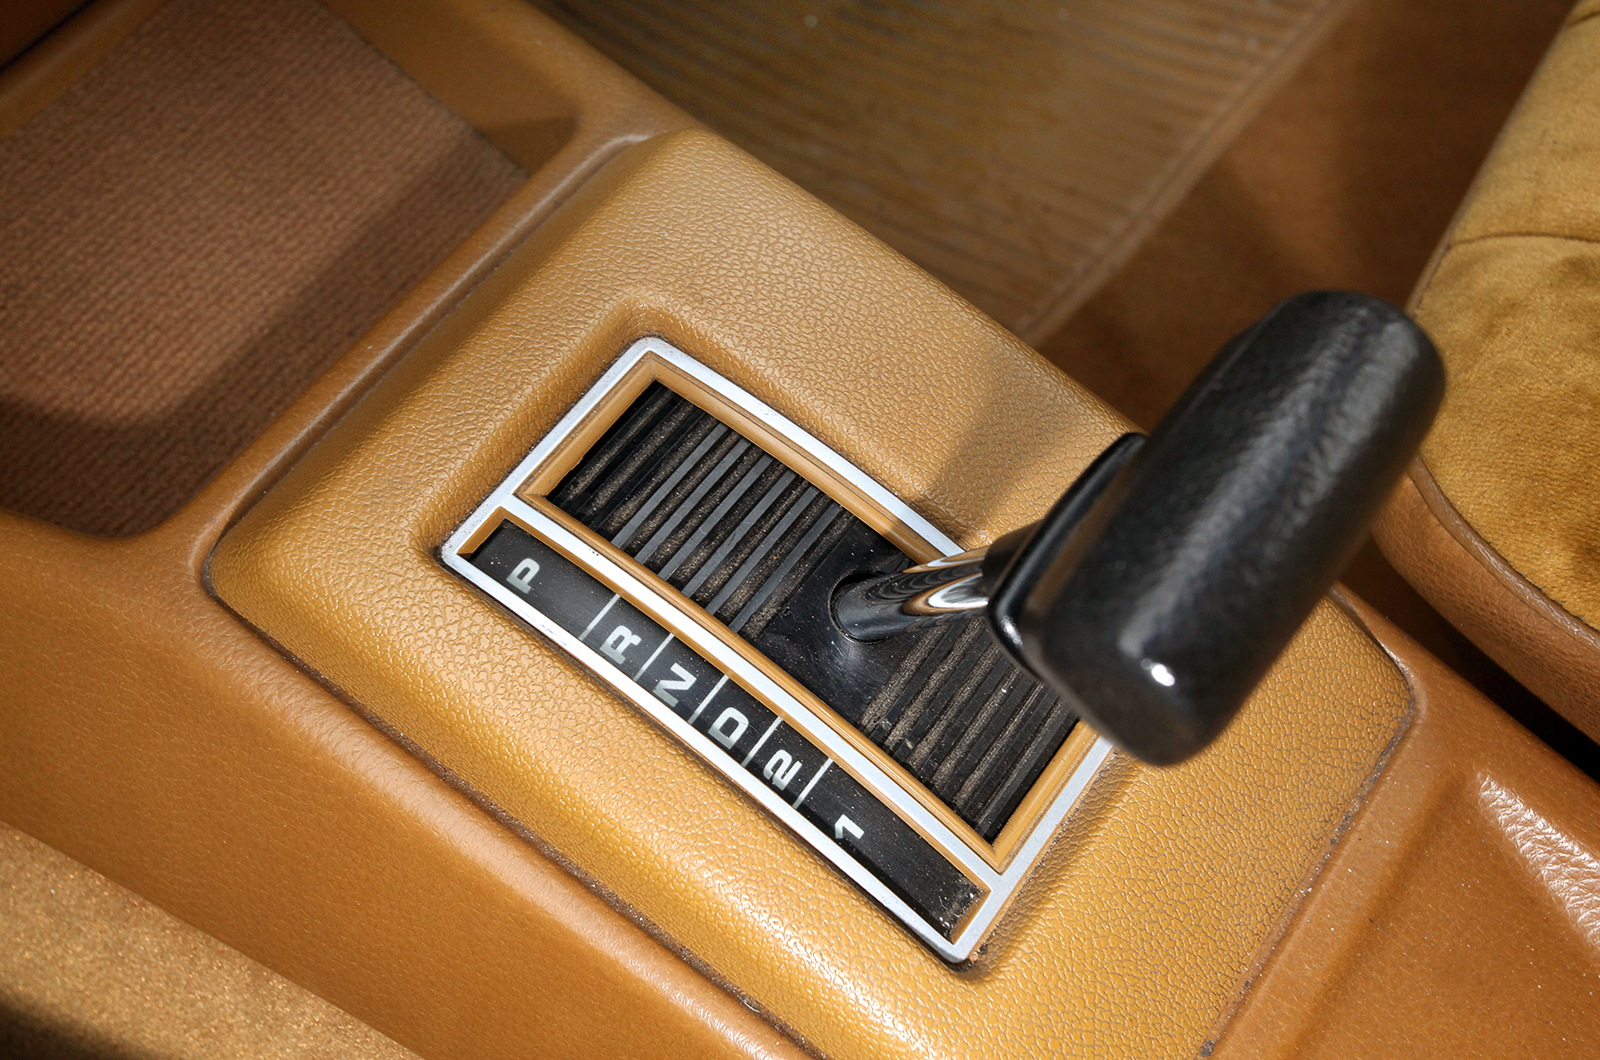 Classic & Sports Car – Vauxhall Royale: Luton’s classiest coupé?